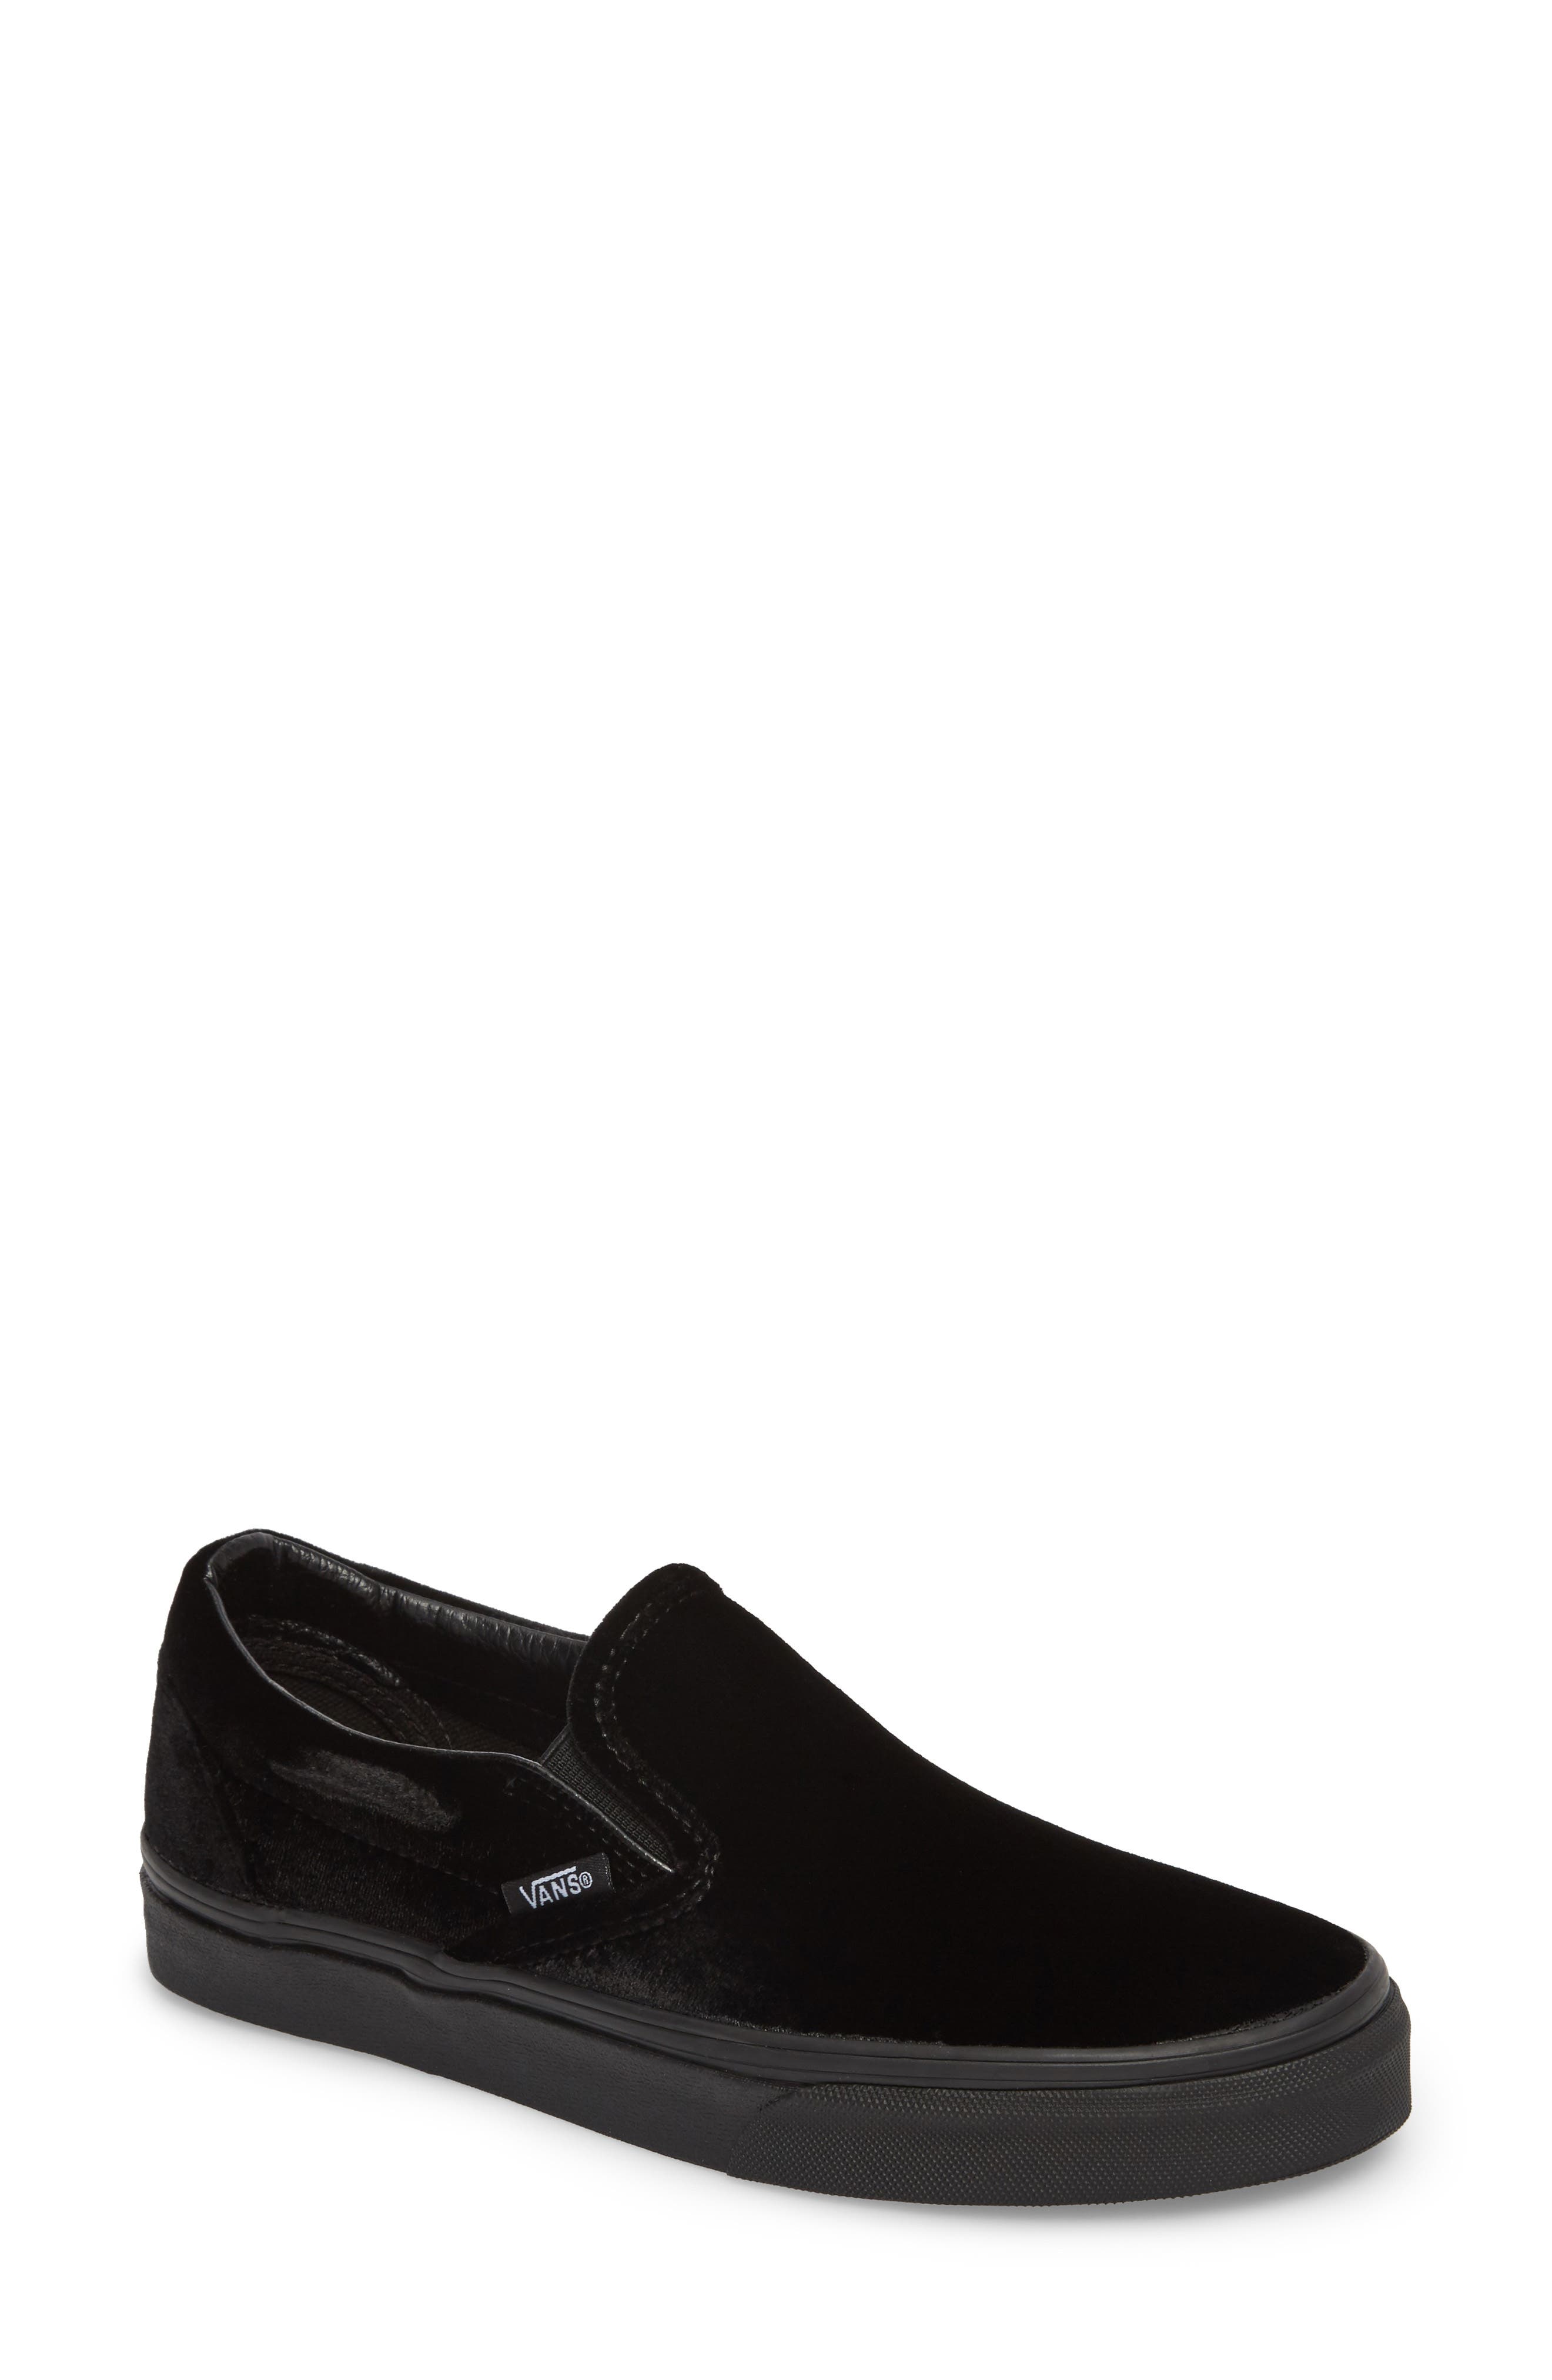 Vans Classic Slip-On Sneaker In Black/ Black | ModeSens